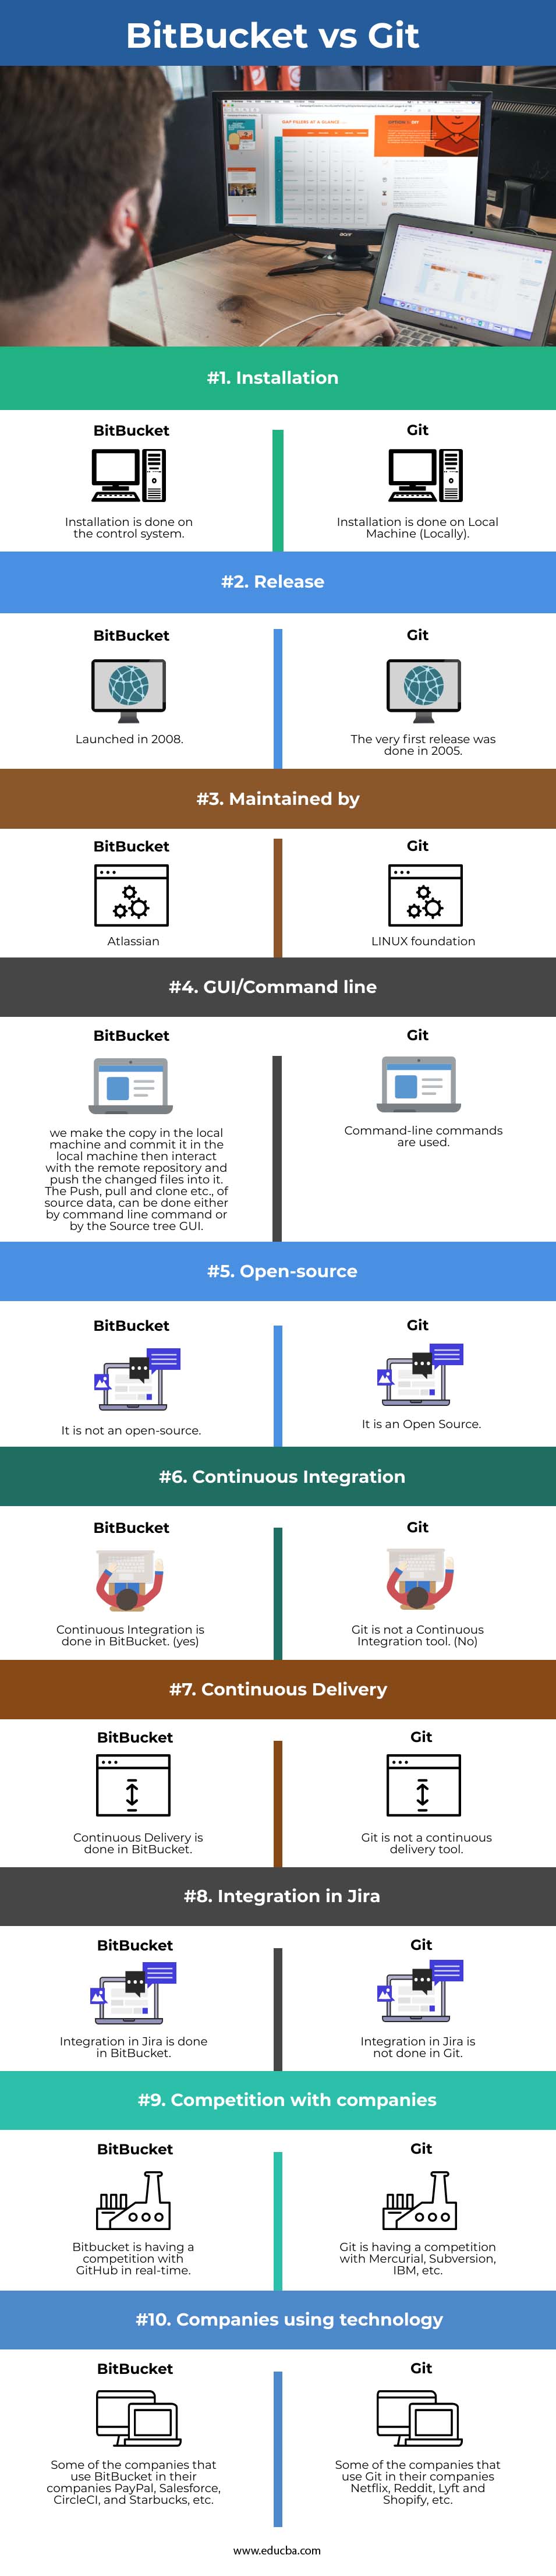 BitBucket vs Git info